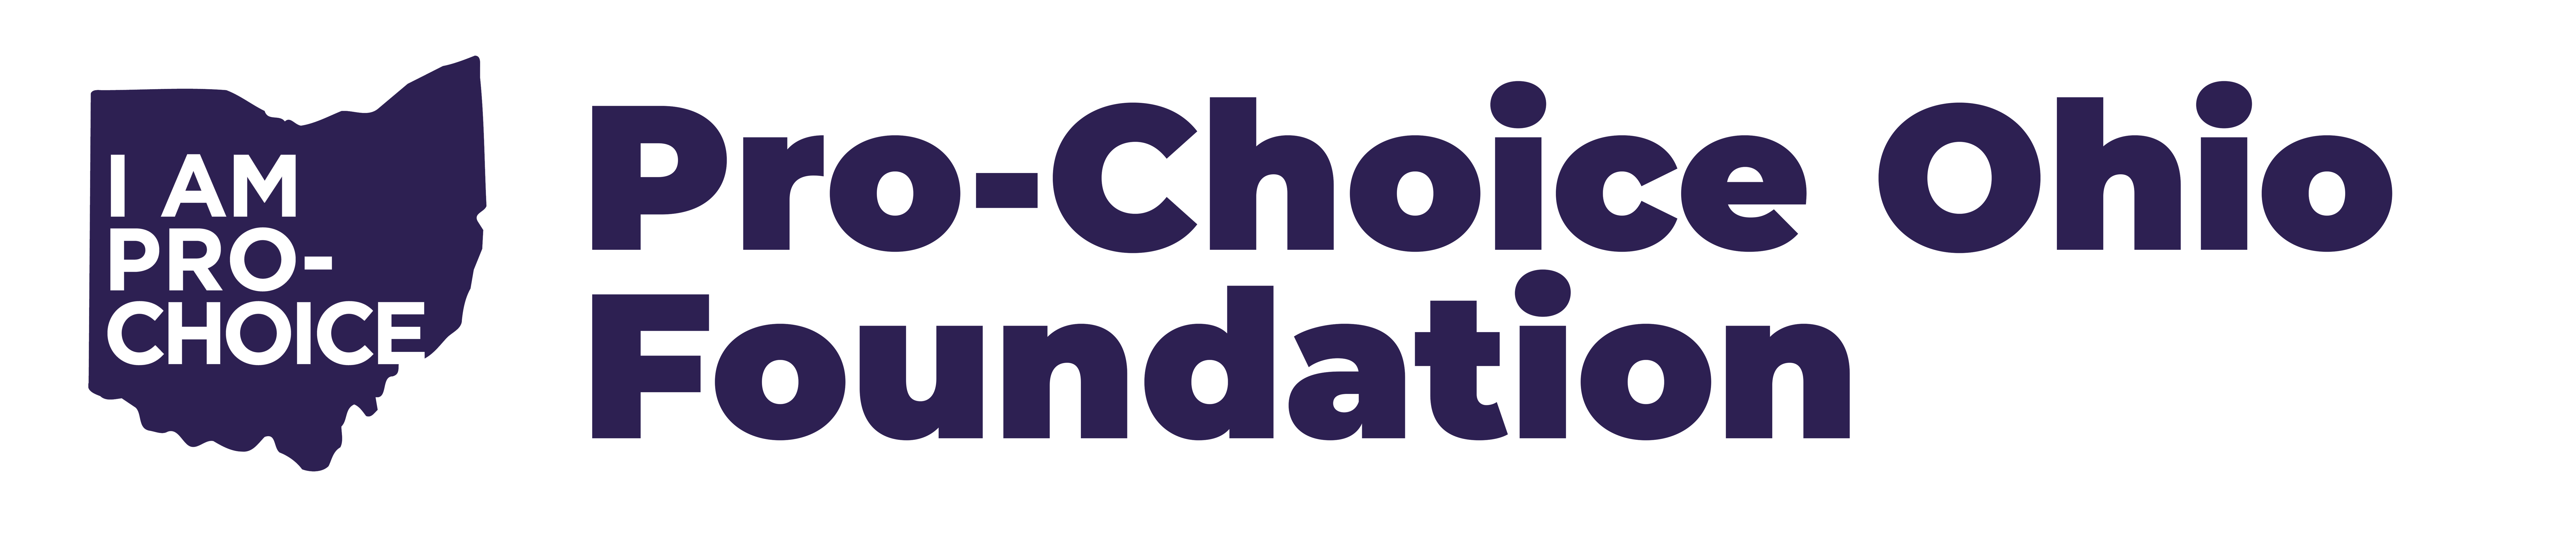 Pro-Choice Ohio Logo.png (327 kb)